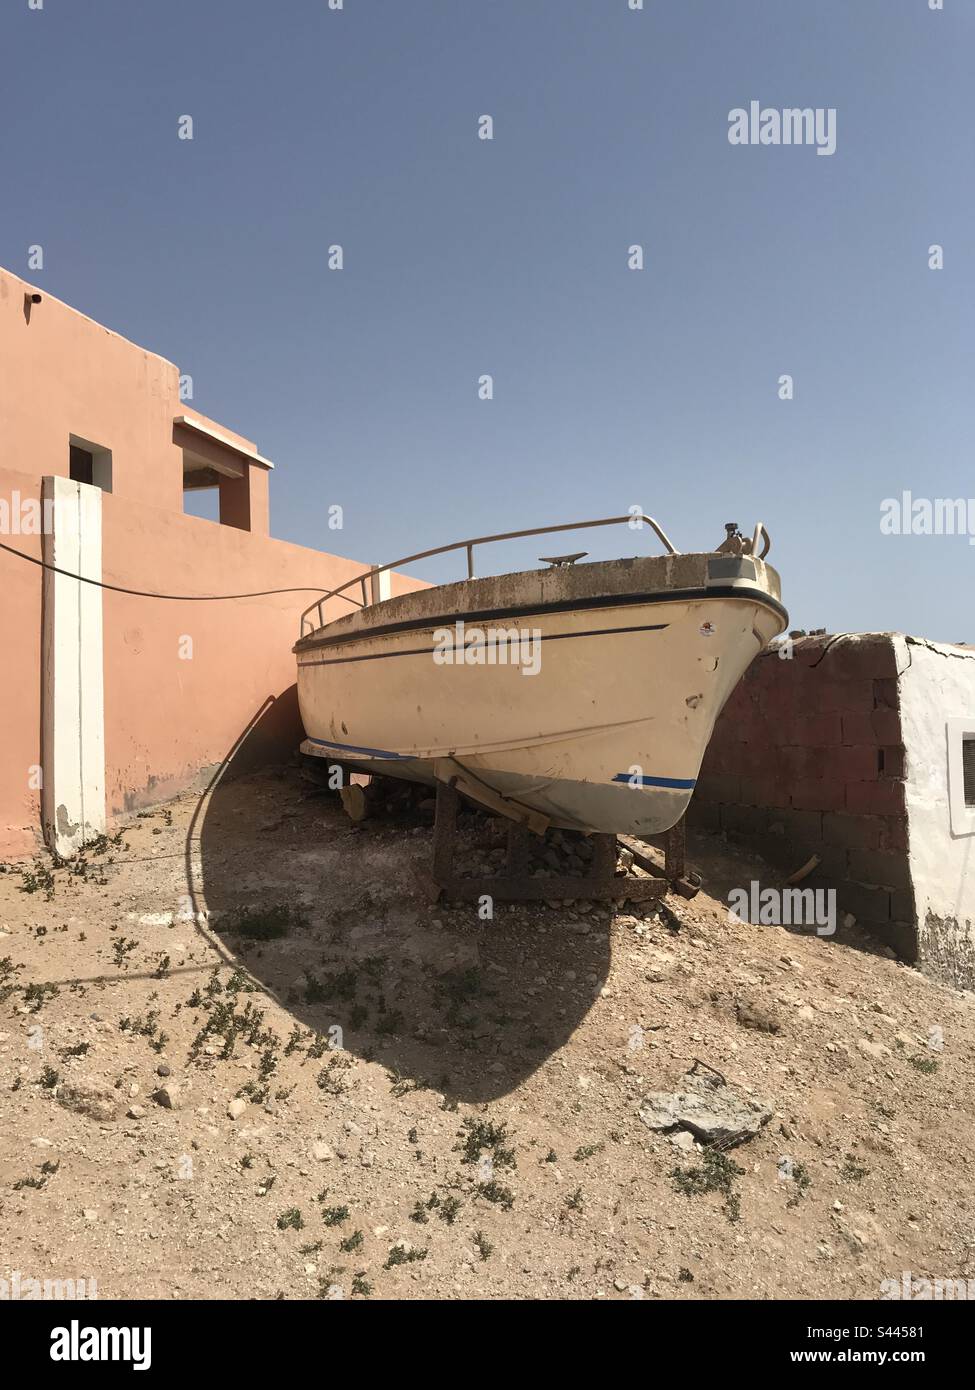 Boat stranded Imsouane Morocco Stock Photo